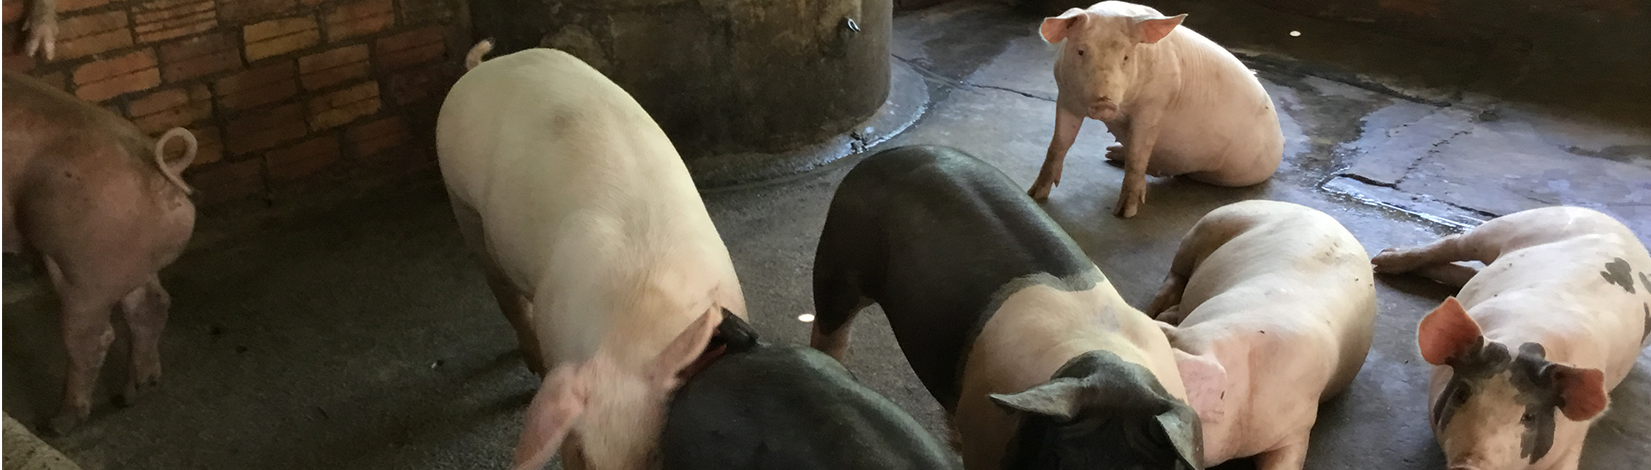 Pigs in Cambodia